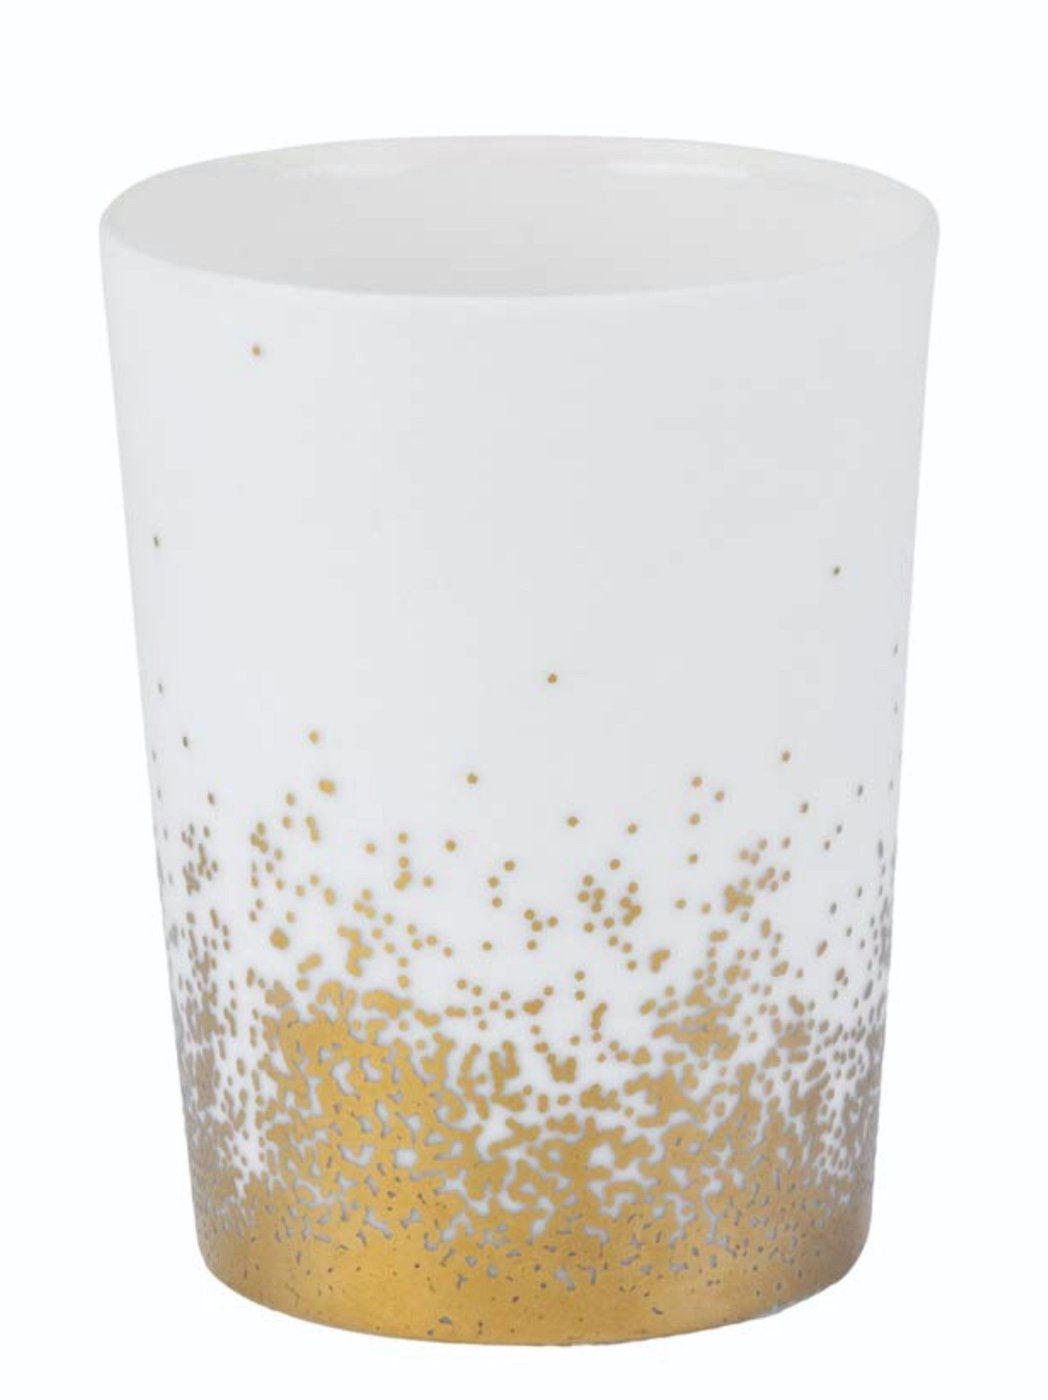 H8cm LIVING klein Design Räder gold Porzellan Teelichthalter Goldstaub Lichter weiß